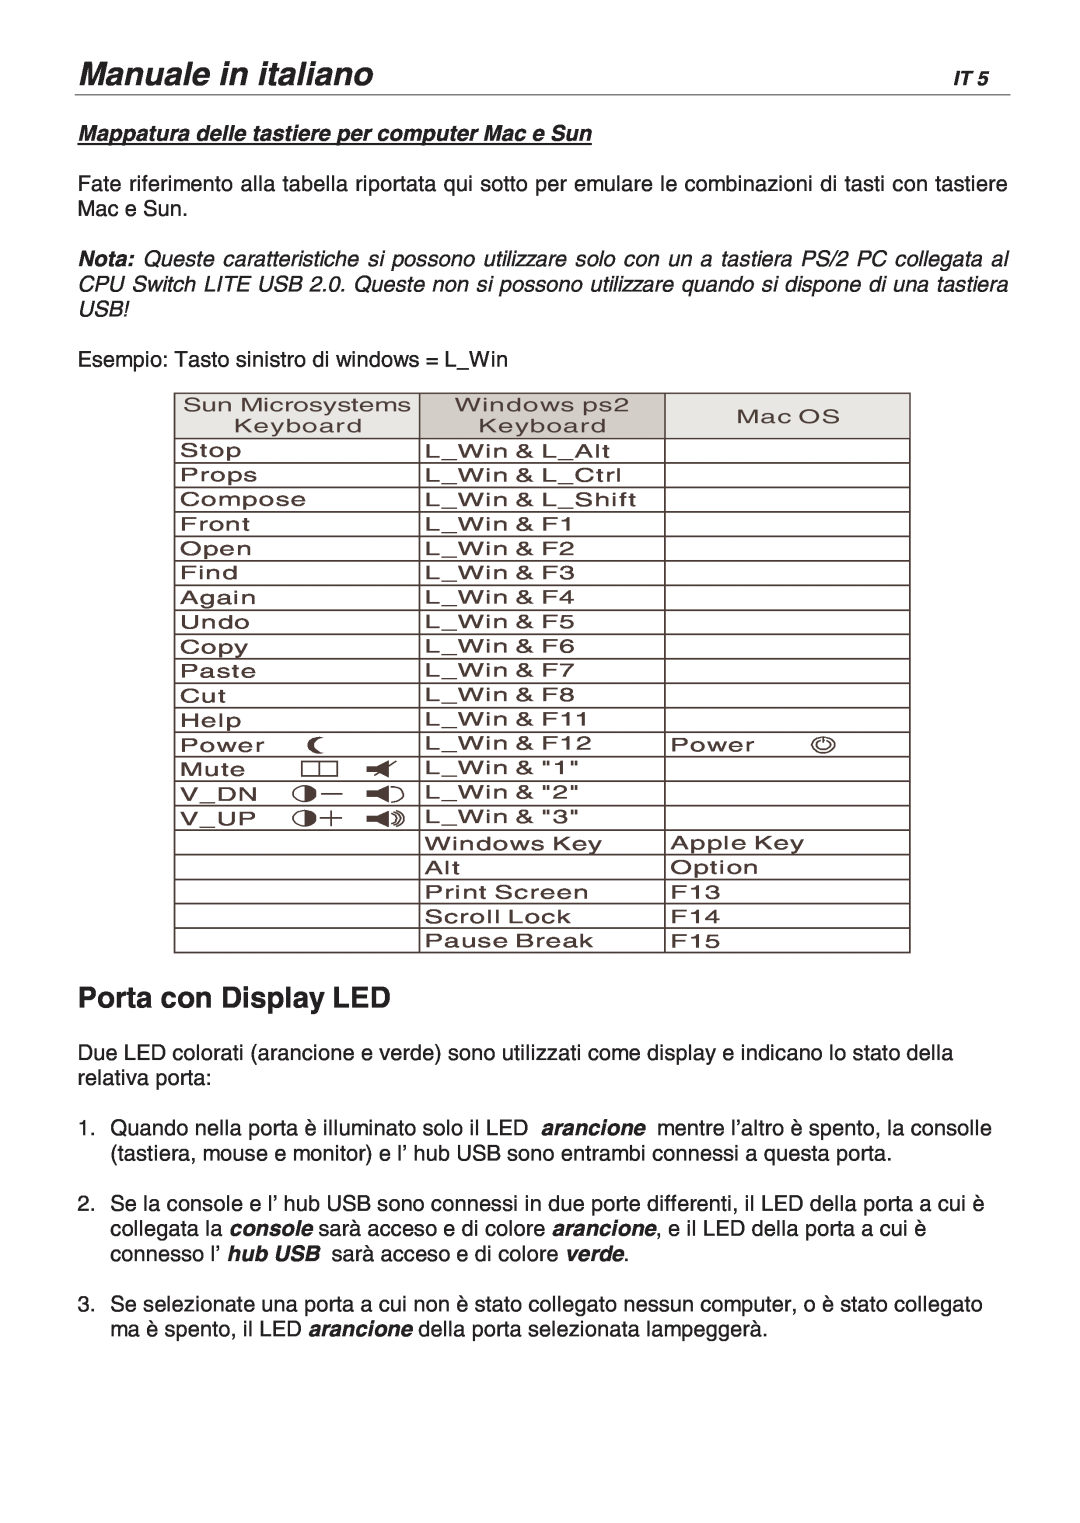 Lindy 32825, 32856 user manual Manuale in italiano, Porta con Display LED, Mappatura delle tastiere per computer Mac e Sun 